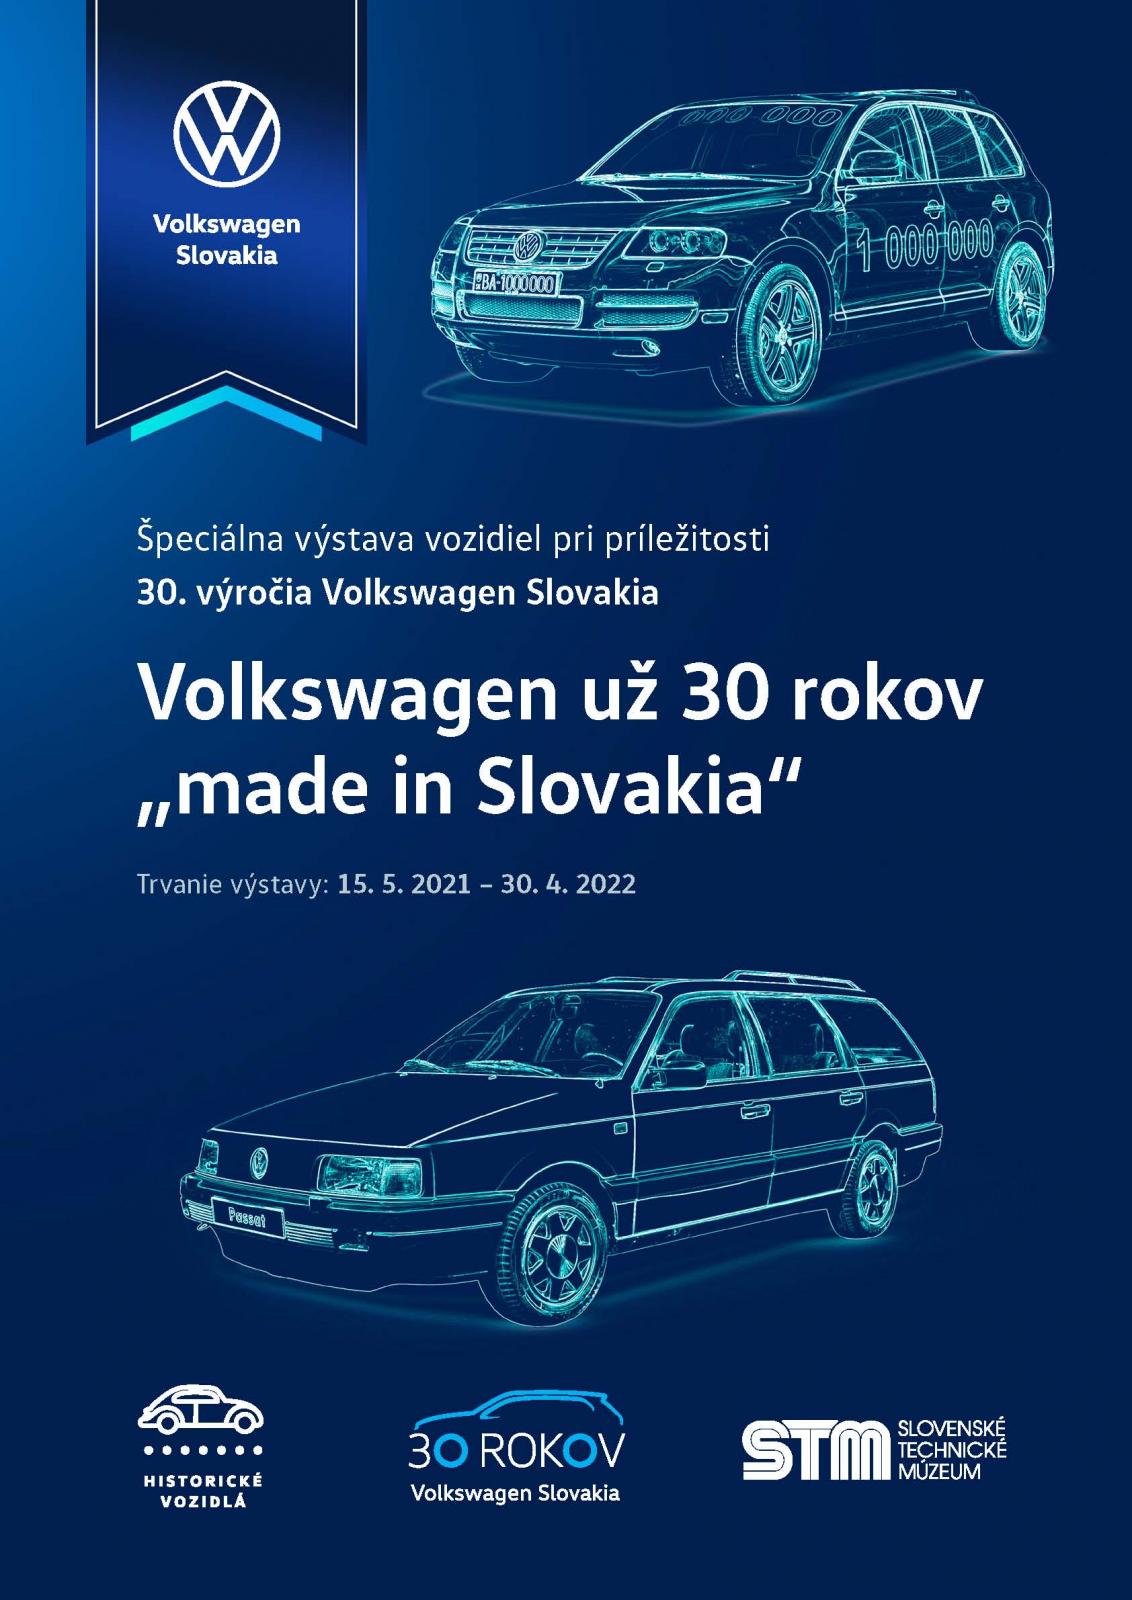 NOV - - - Volkswagen u 30 rokov made in Slovakia 2021 Bratislava